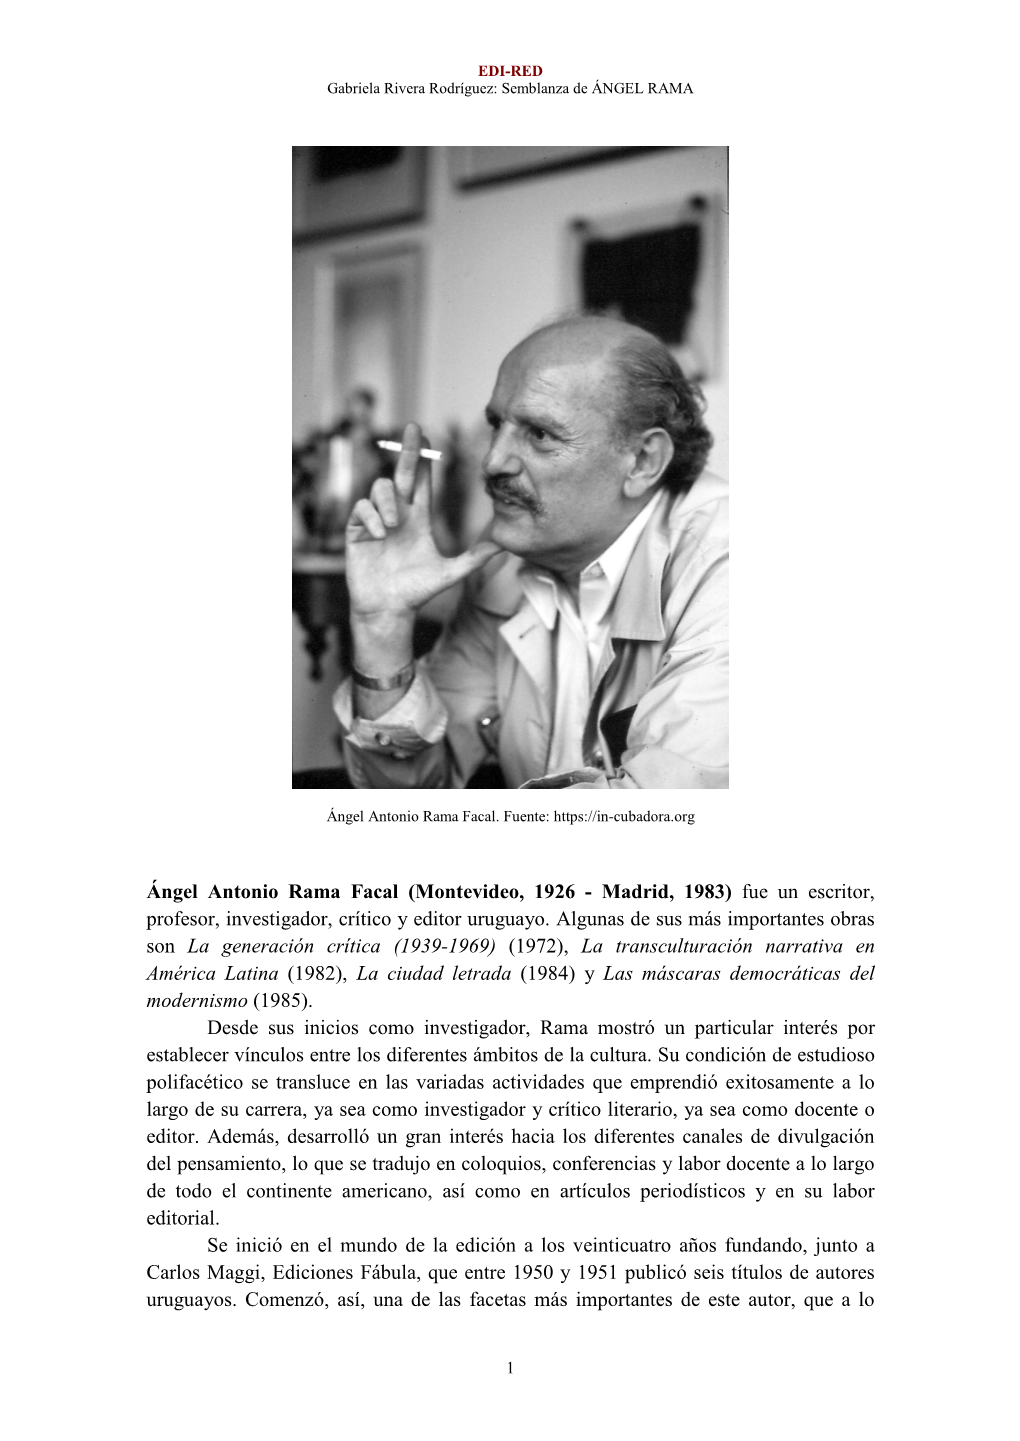 Ángel Antonio Rama Facal (Montevideo, 1926 - Madrid, 1983) Fue Un Escritor, Profesor, Investigador, Crítico Y Editor Uruguayo